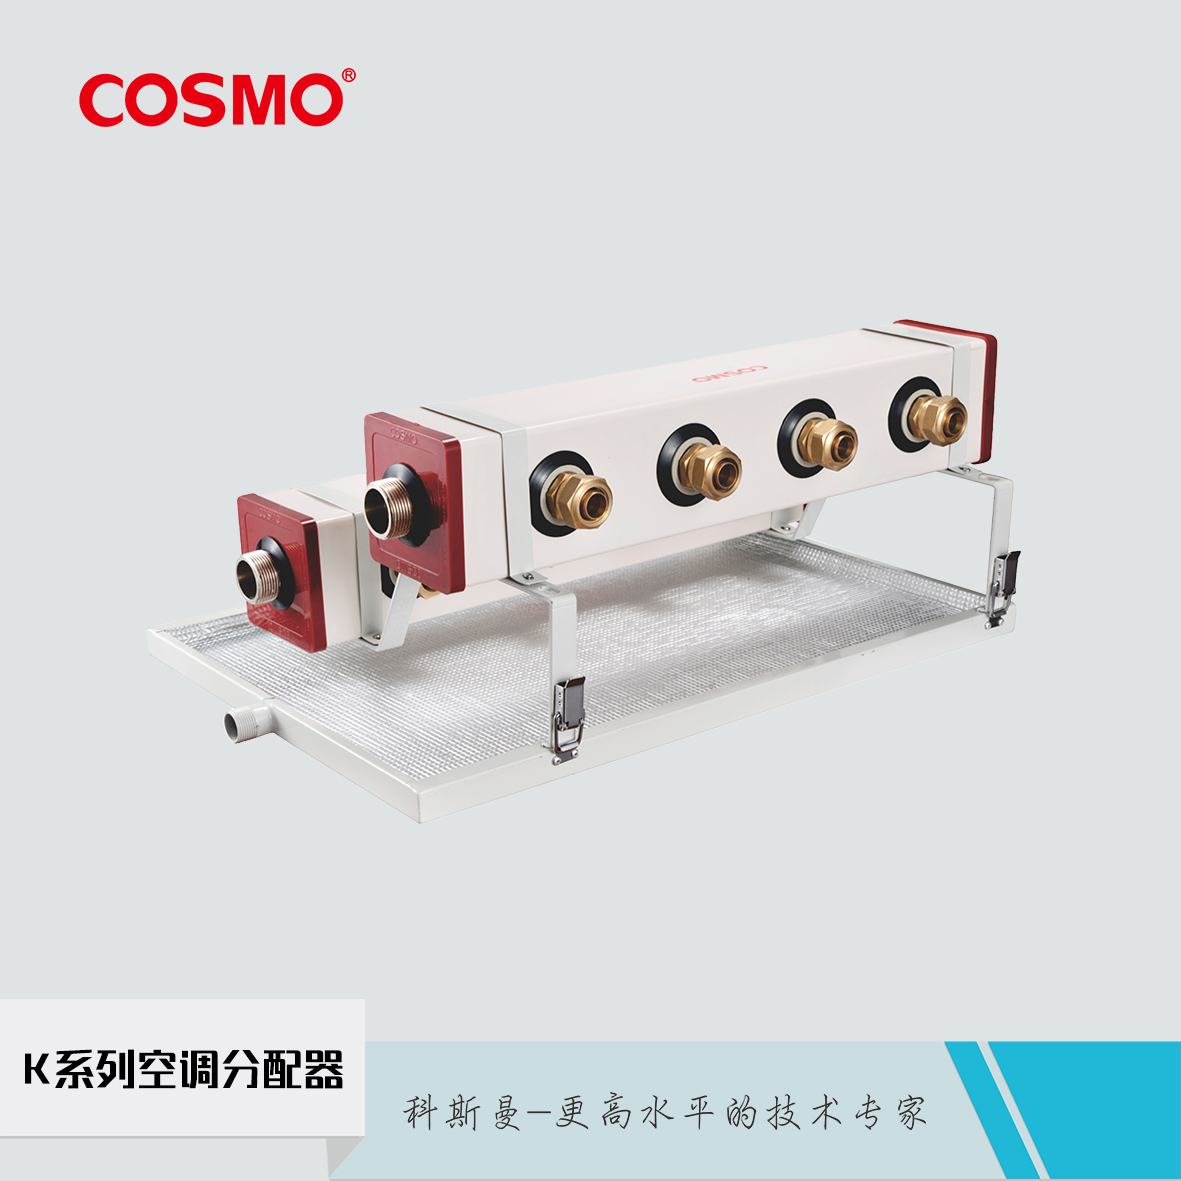 科斯曼cosmo空调水力分配器 科斯曼cosmoK系列空调分配器图片